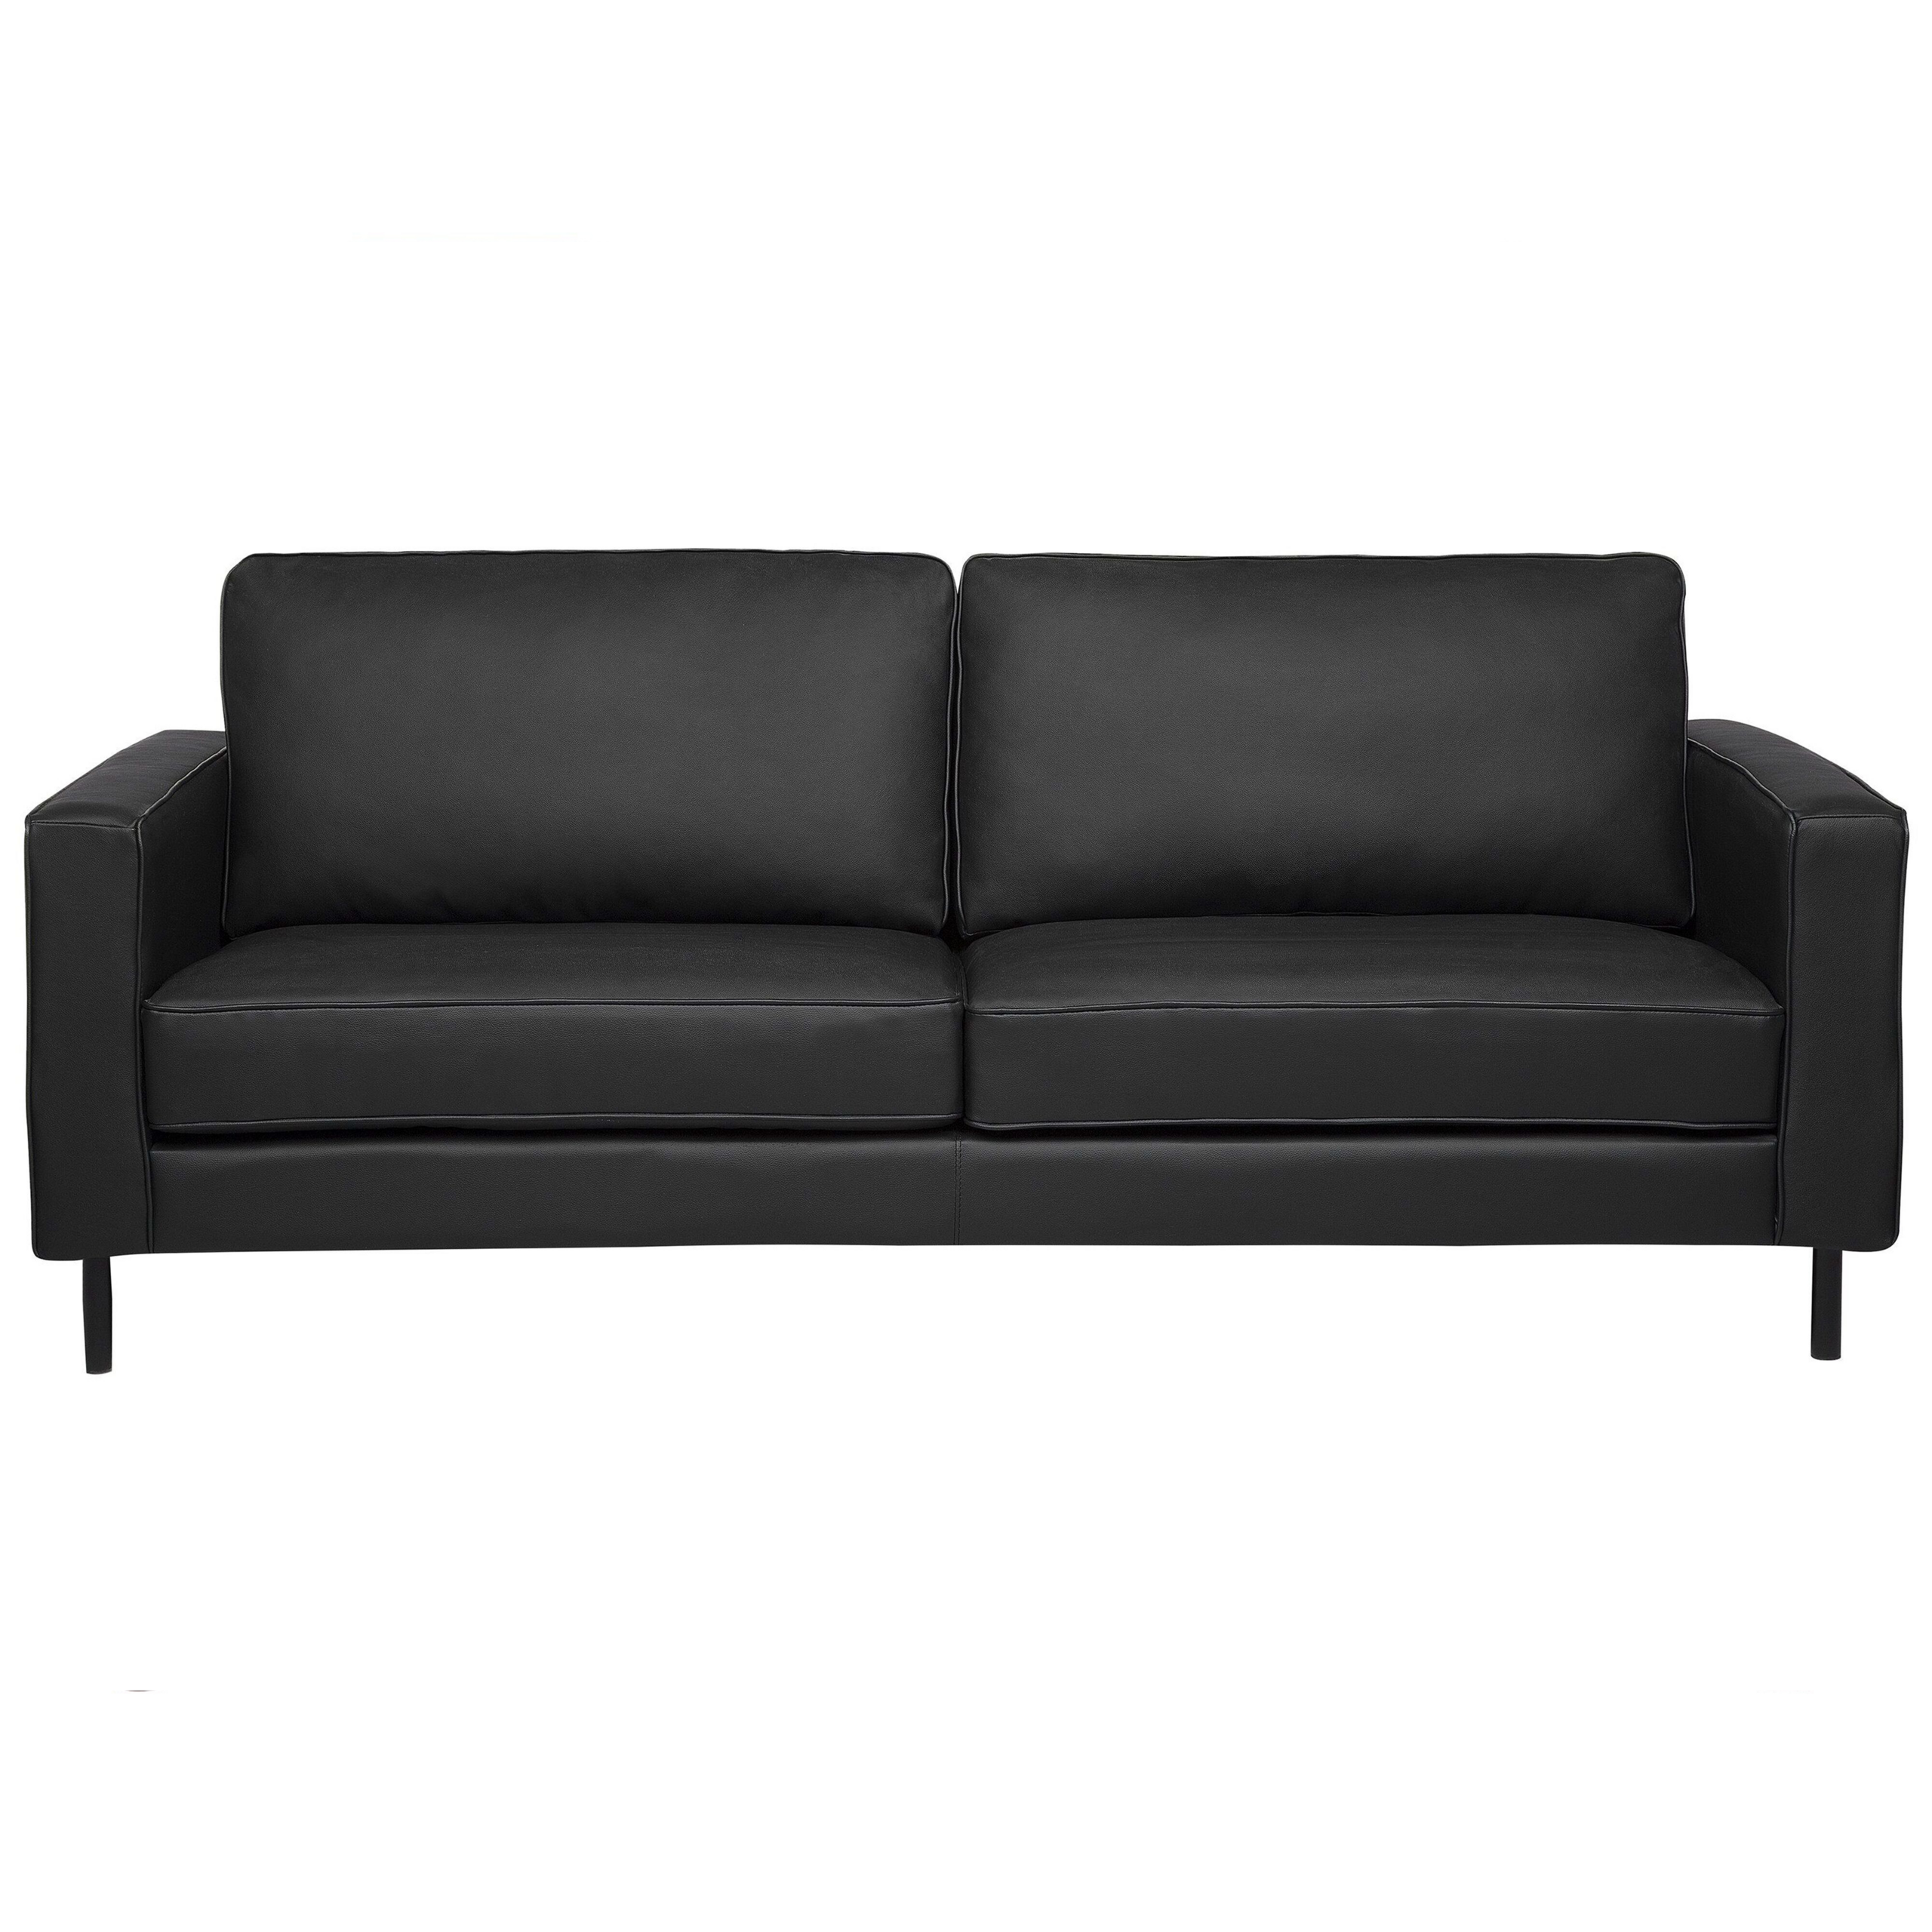 Beliani Sofa Black Leather 3 Seater Metal Legs Upholstered Back Minimalist Modern